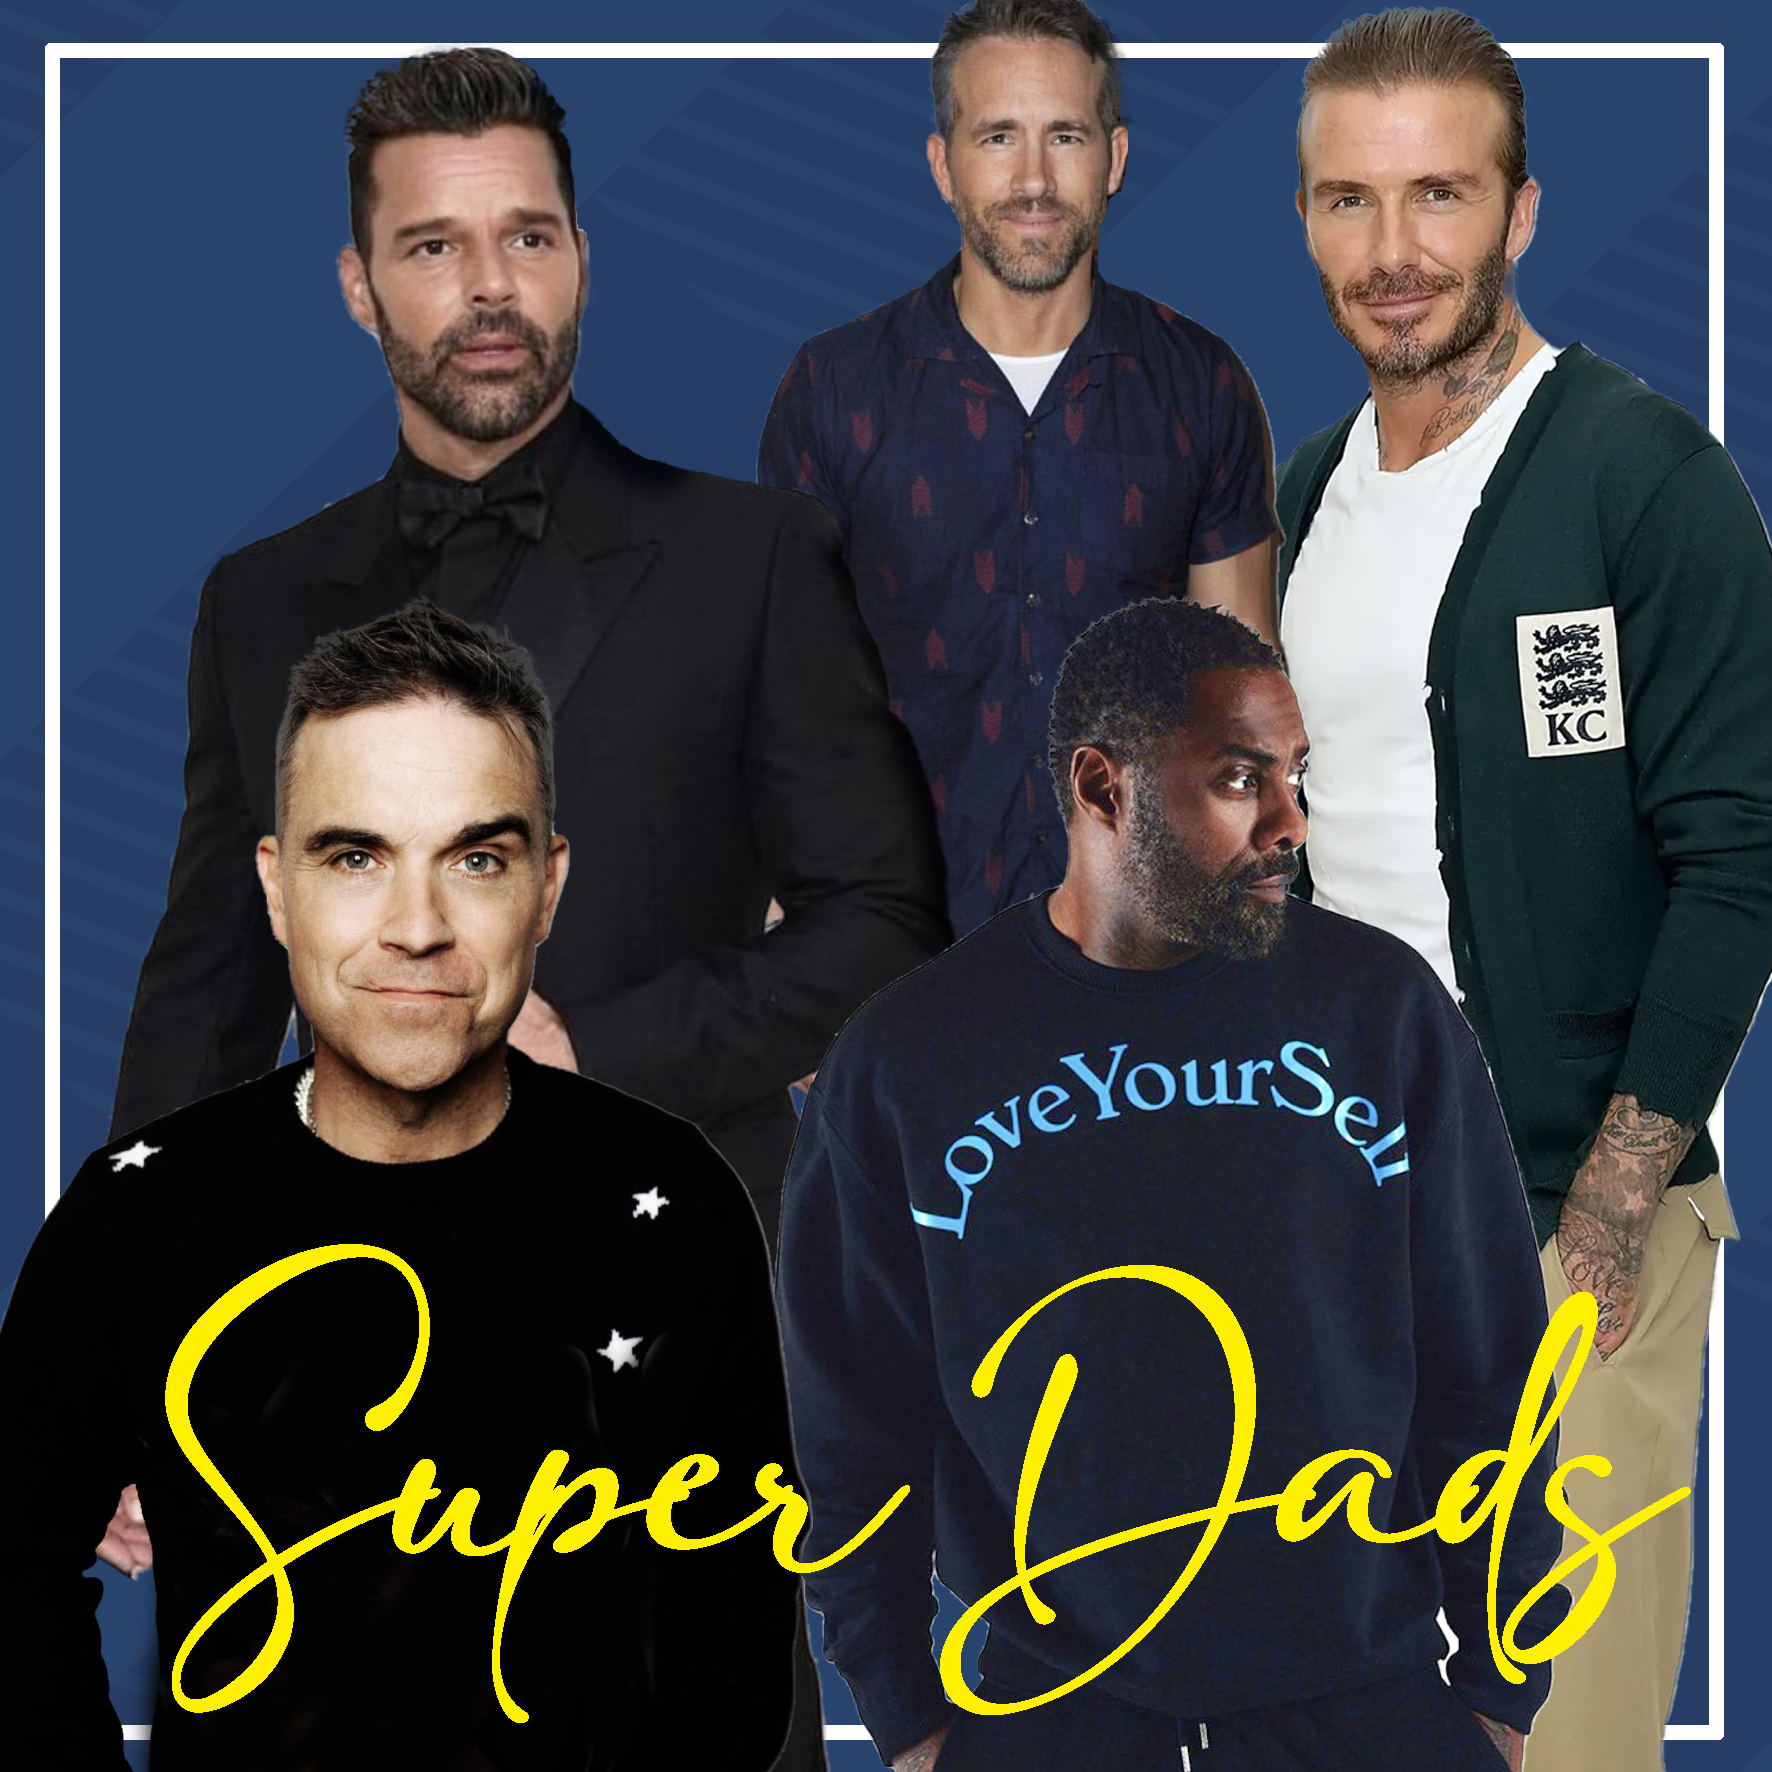 Γιορτή του Πατέρα: 5 Super Dads που αγαπάμε!